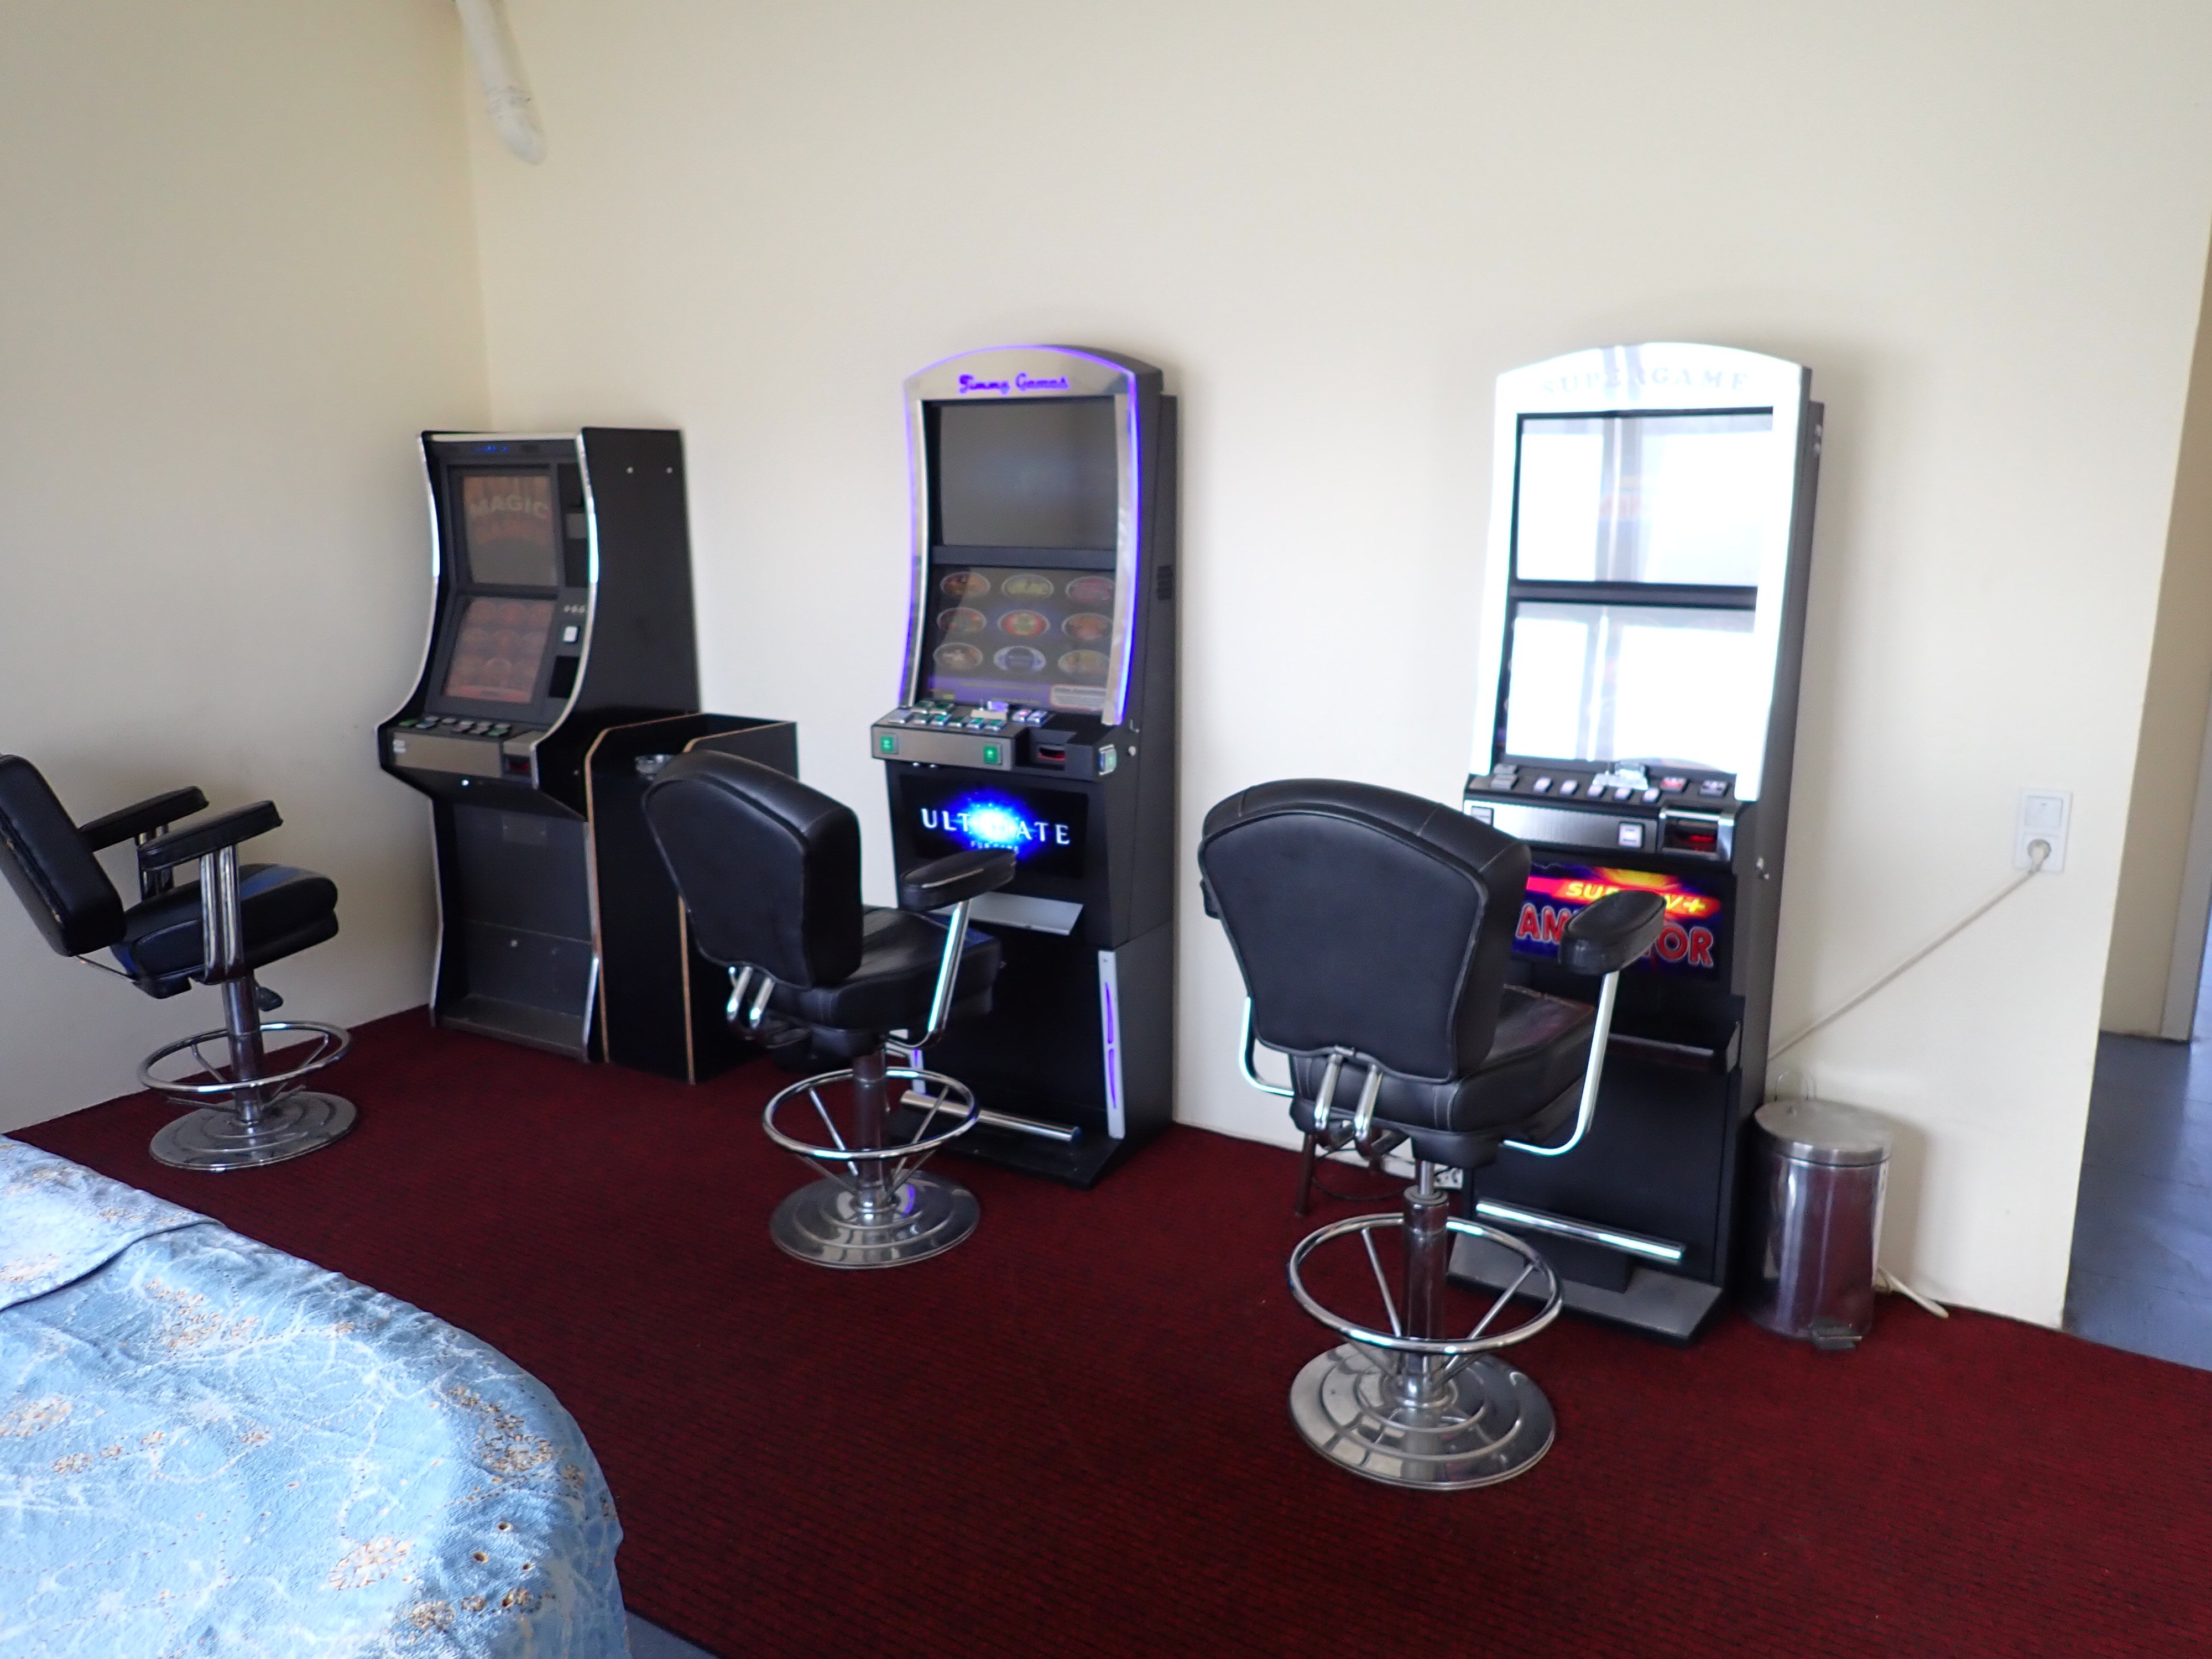 Illegal betriebene Glücksspielautomaten im Vereinsheim